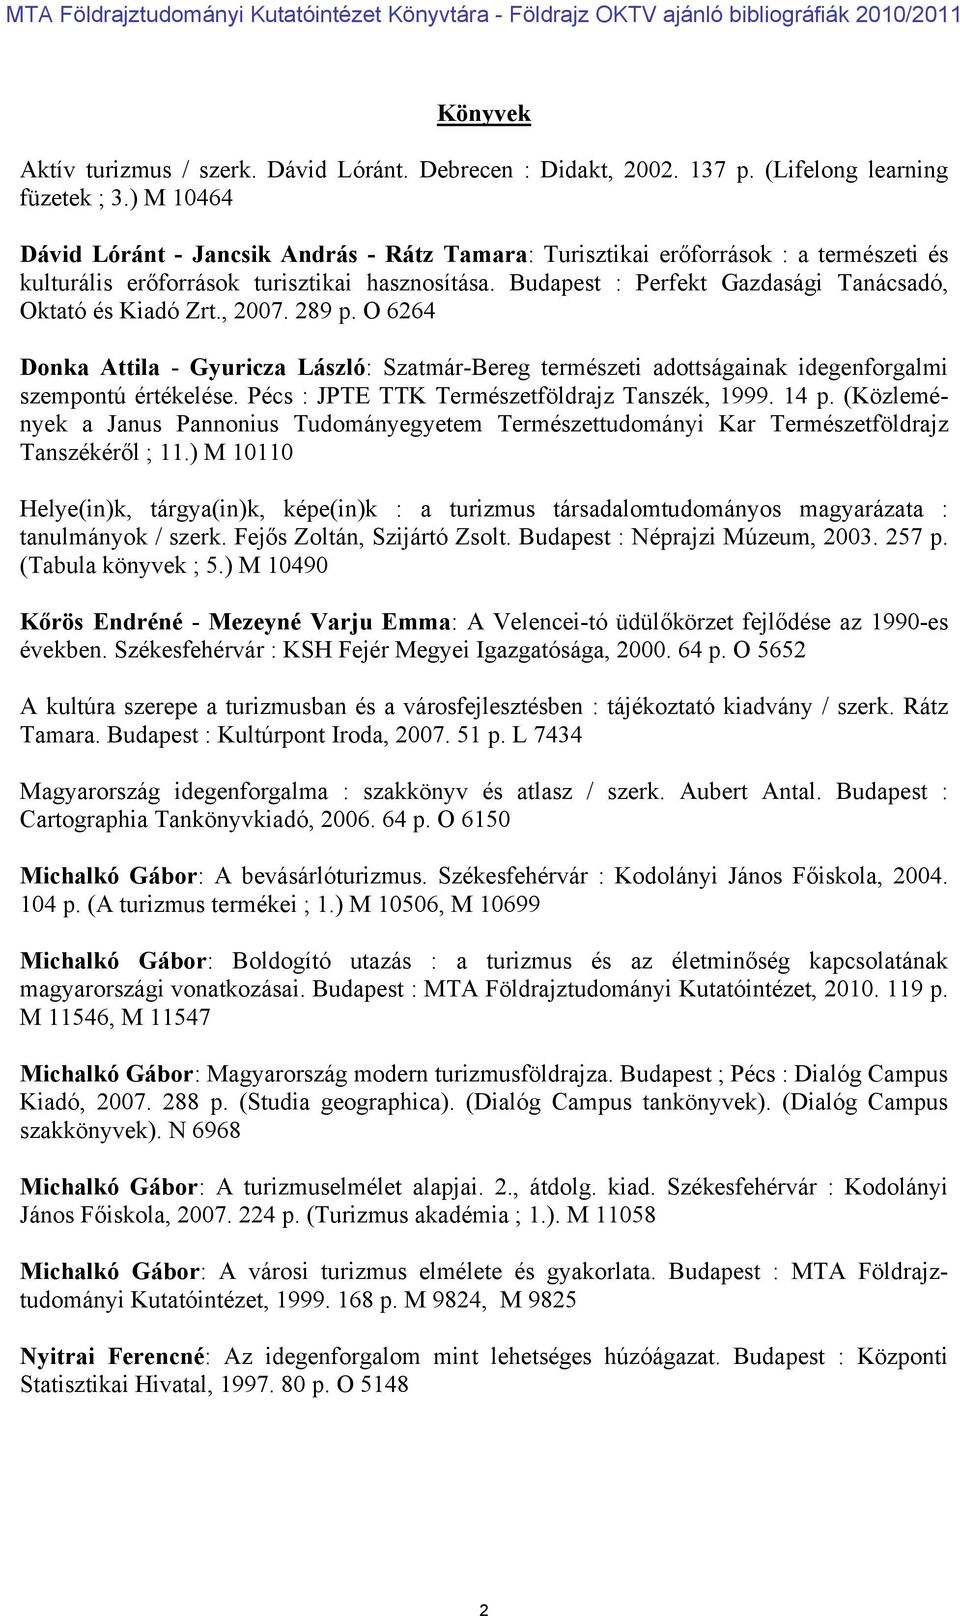 Budapest : Perfekt Gazdasági Tanácsadó, Oktató és Kiadó Zrt., 2007. 289 p. O 6264 Donka Attila - Gyuricza László: Szatmár-Bereg természeti adottságainak idegenforgalmi szempontú értékelése.